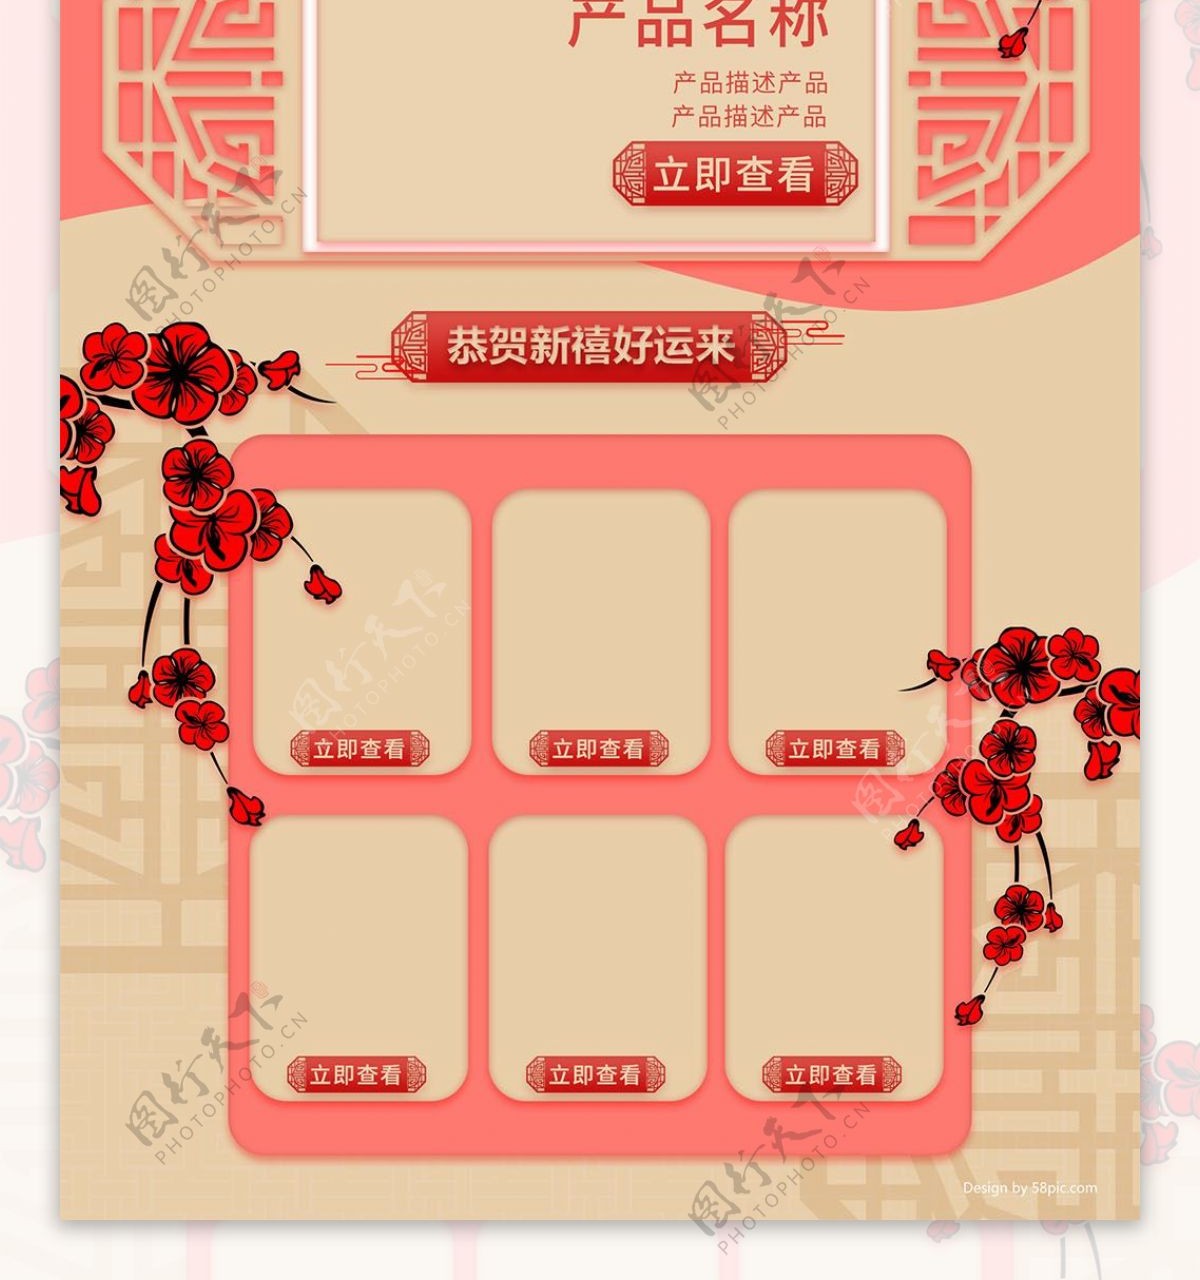 天猫淘宝2019新年中国风红色首页